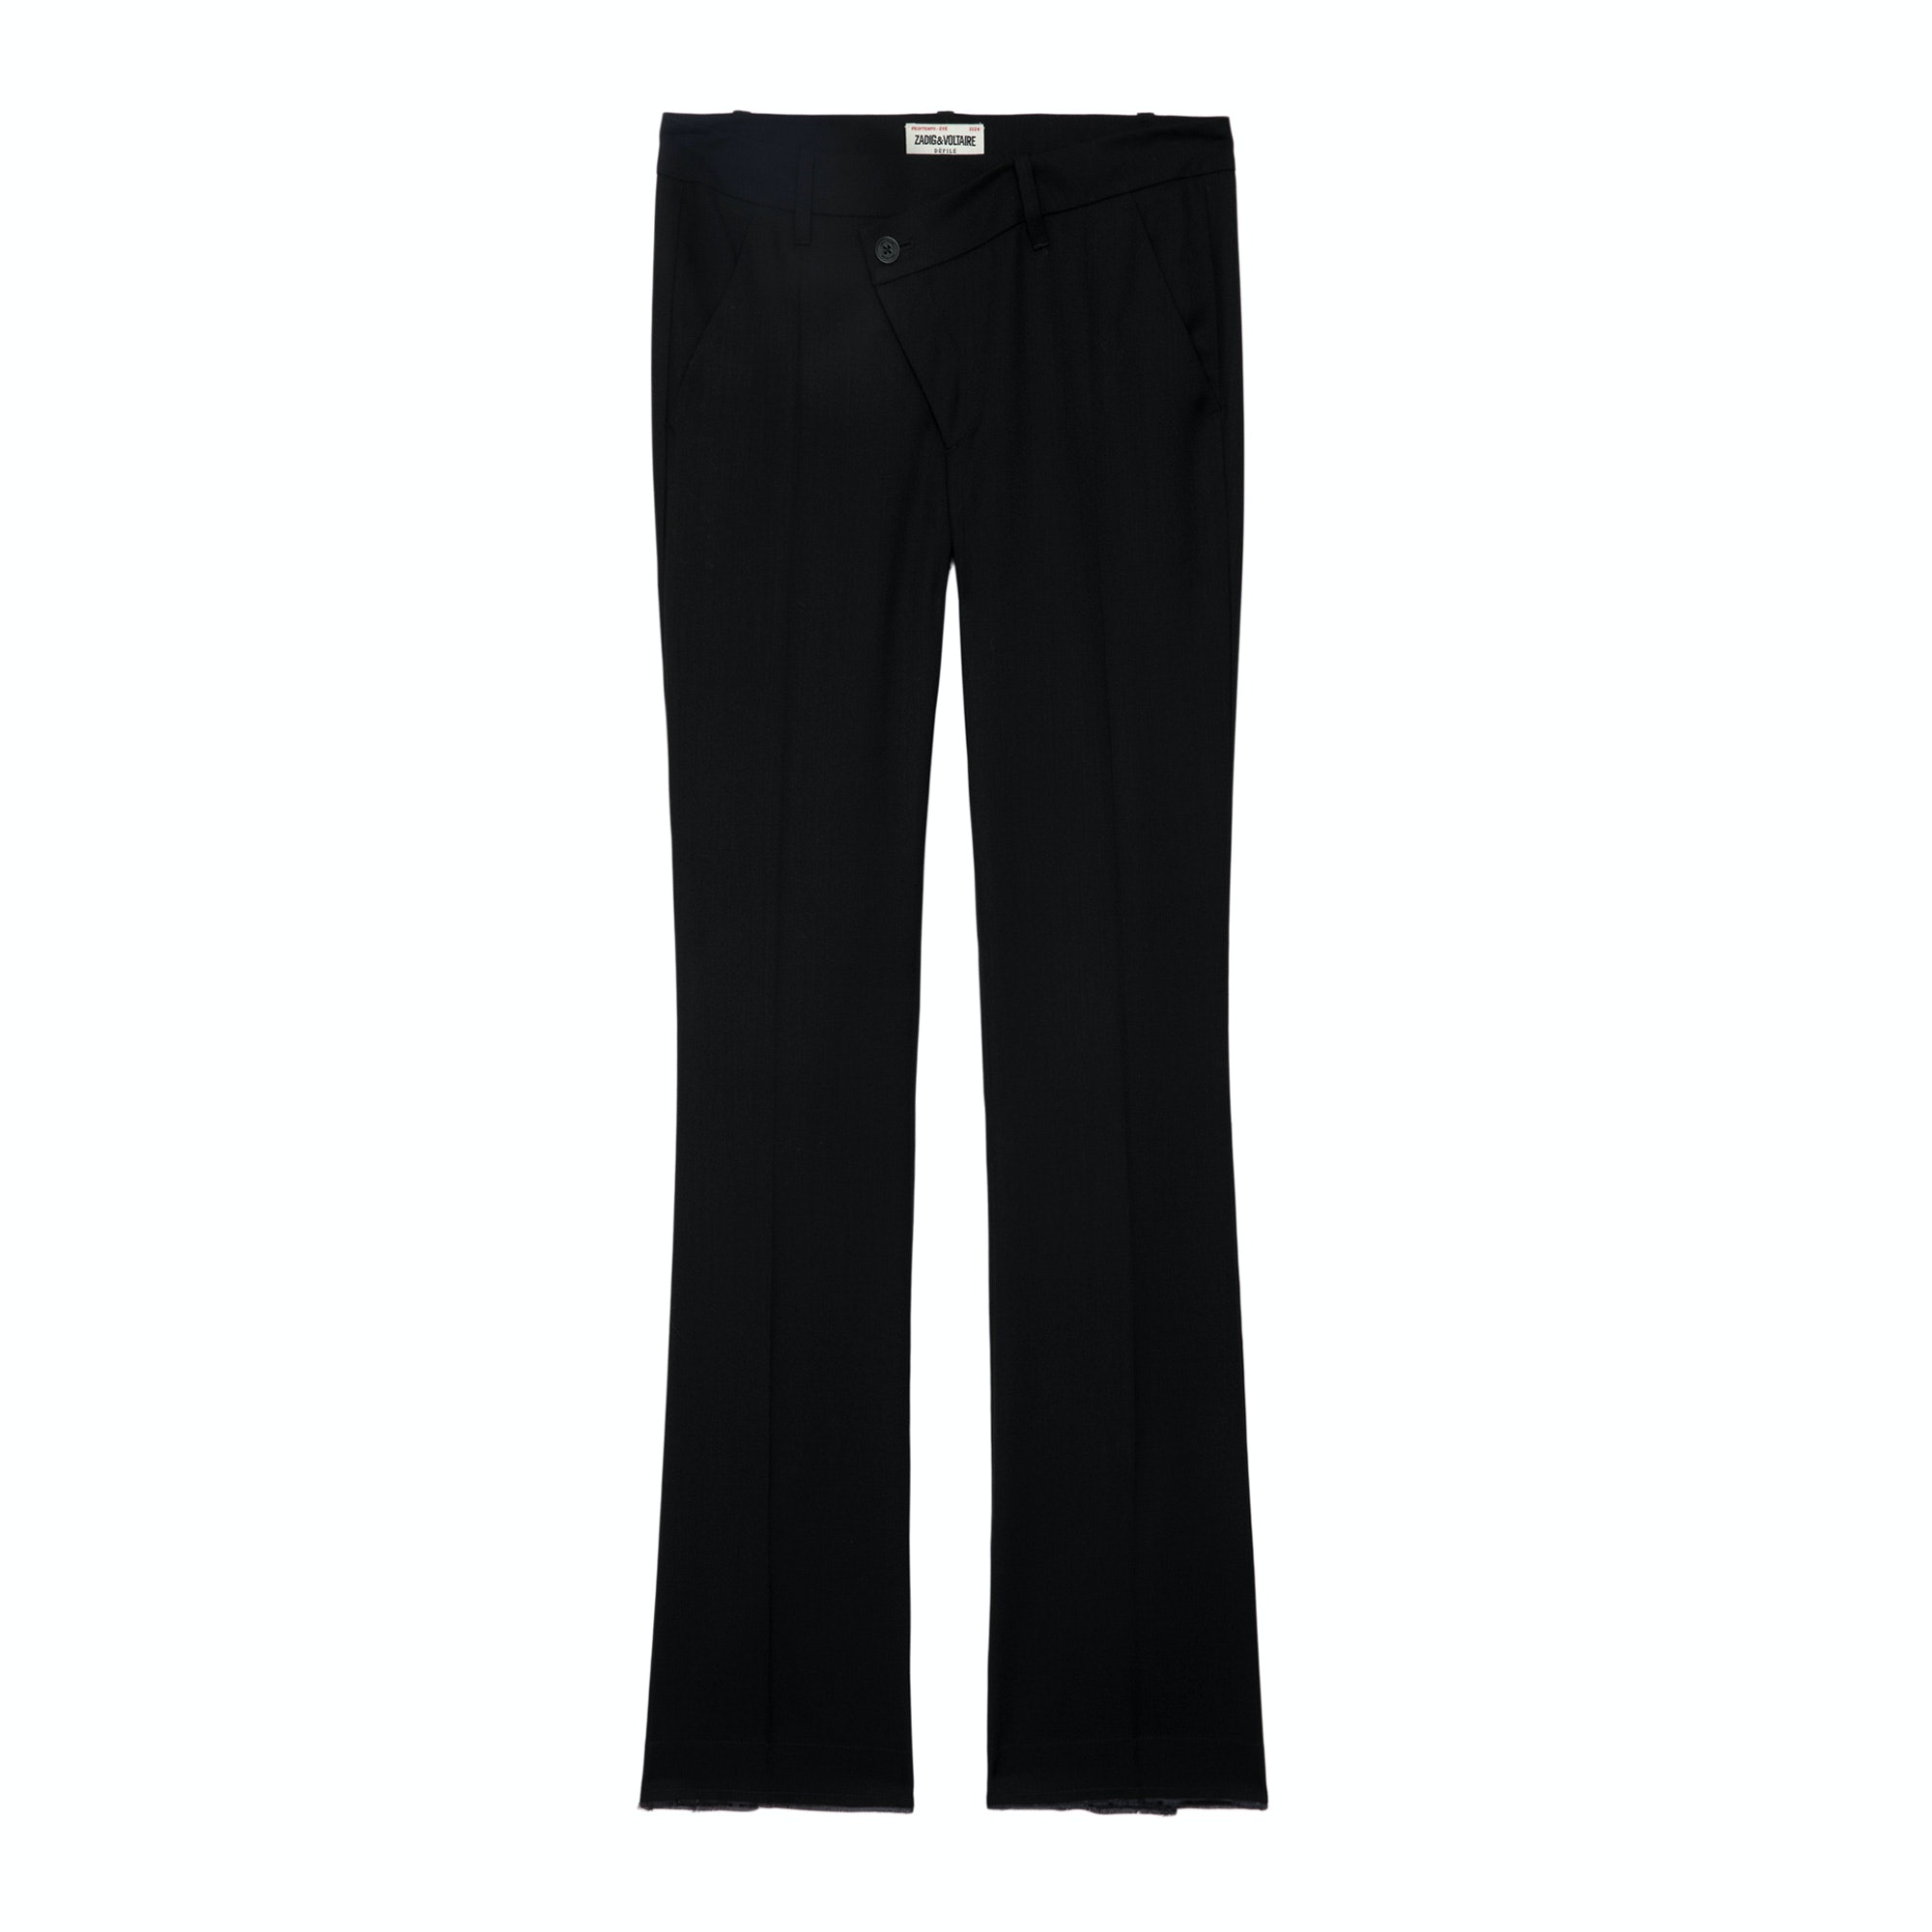 Pantalon Poxy Noir - Taille 40 - Femme